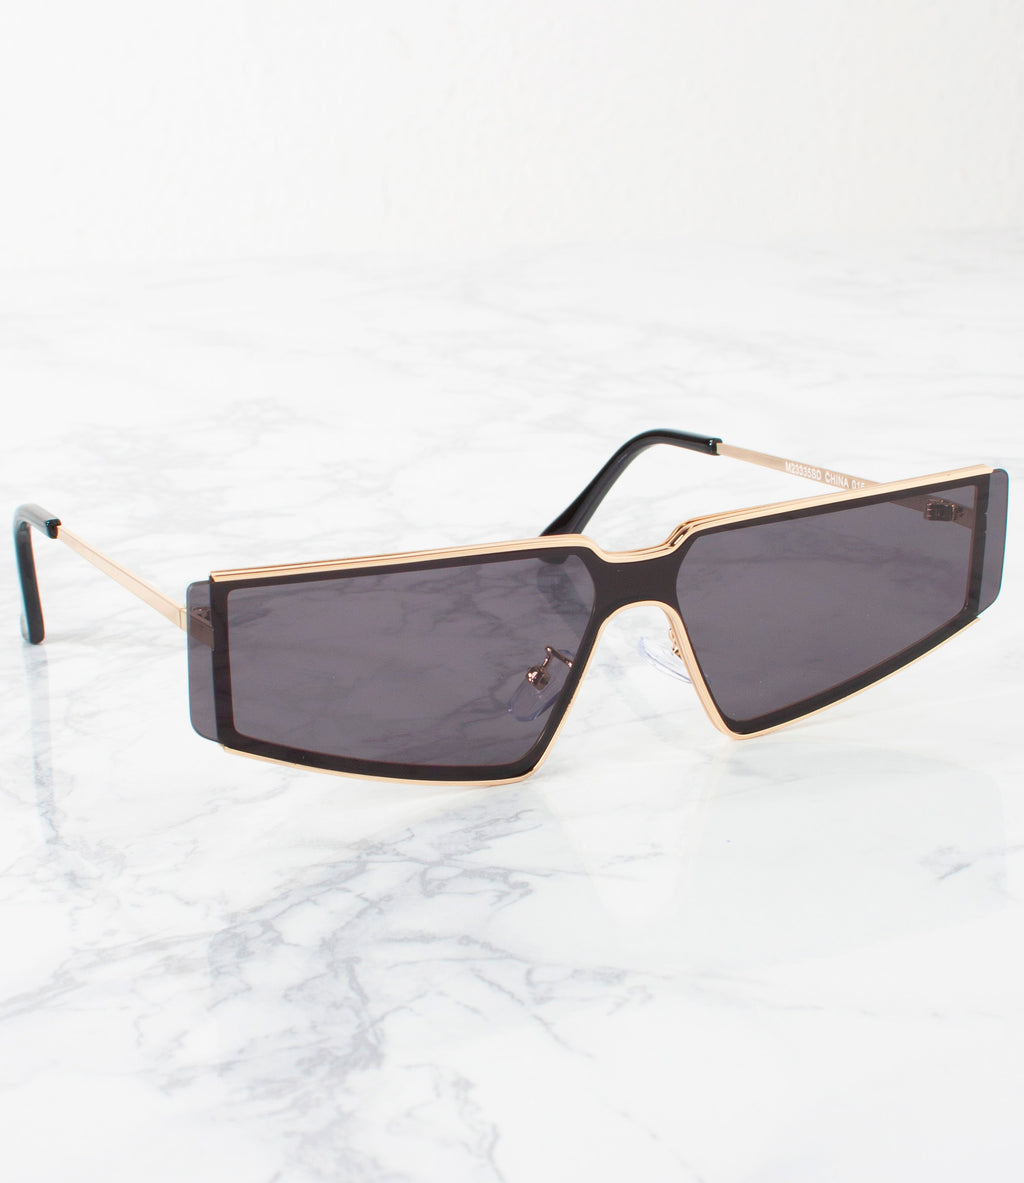 Buy KENBO Oversized Sunglasses for Women Men Trendy Square Sun